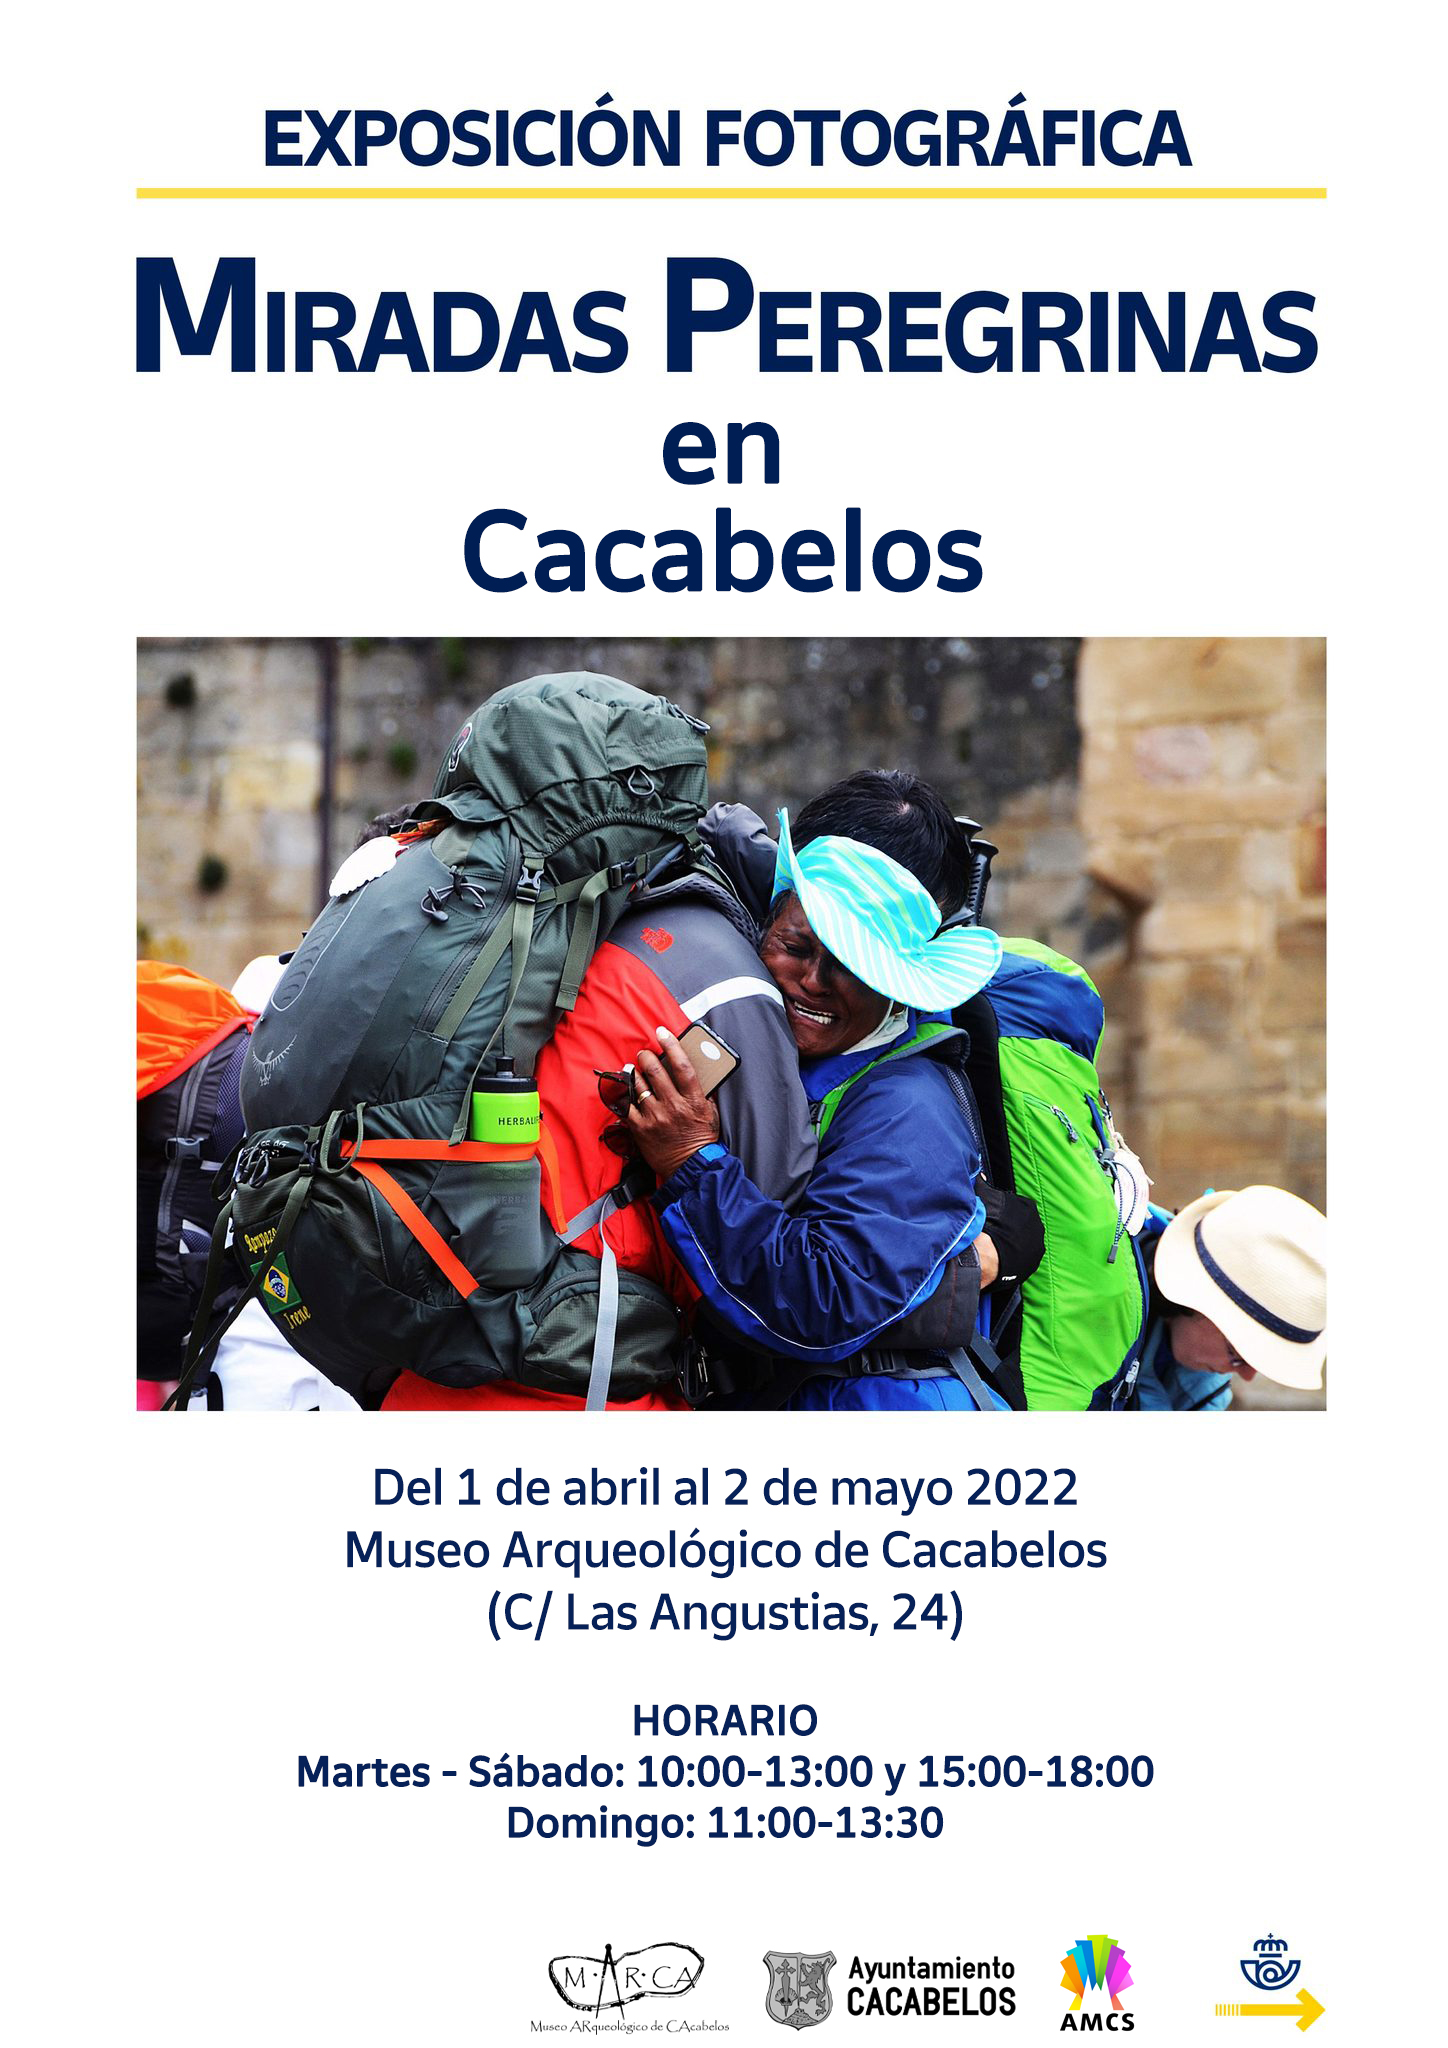 El Camino de Santiago hace una parada en el M·AR·CA con la expo "Miradas peregrinas" 2